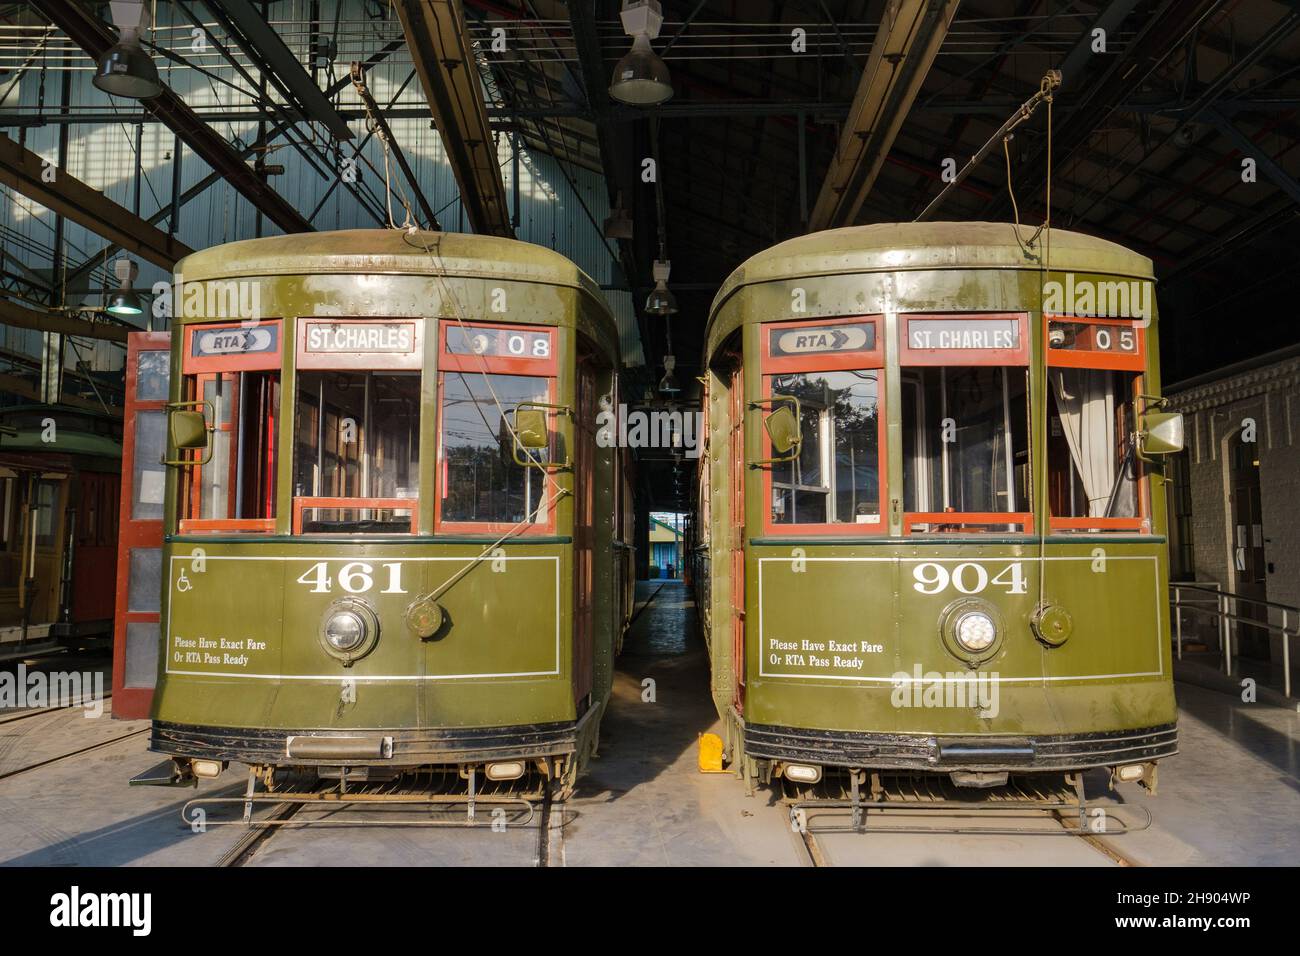 LA NOUVELLE-ORLÉANS, LA, États-Unis - 2 DÉCEMBRE 2021 : deux tramways de la ligne St. Charles dans la rue car Barn sur Willow Street Banque D'Images